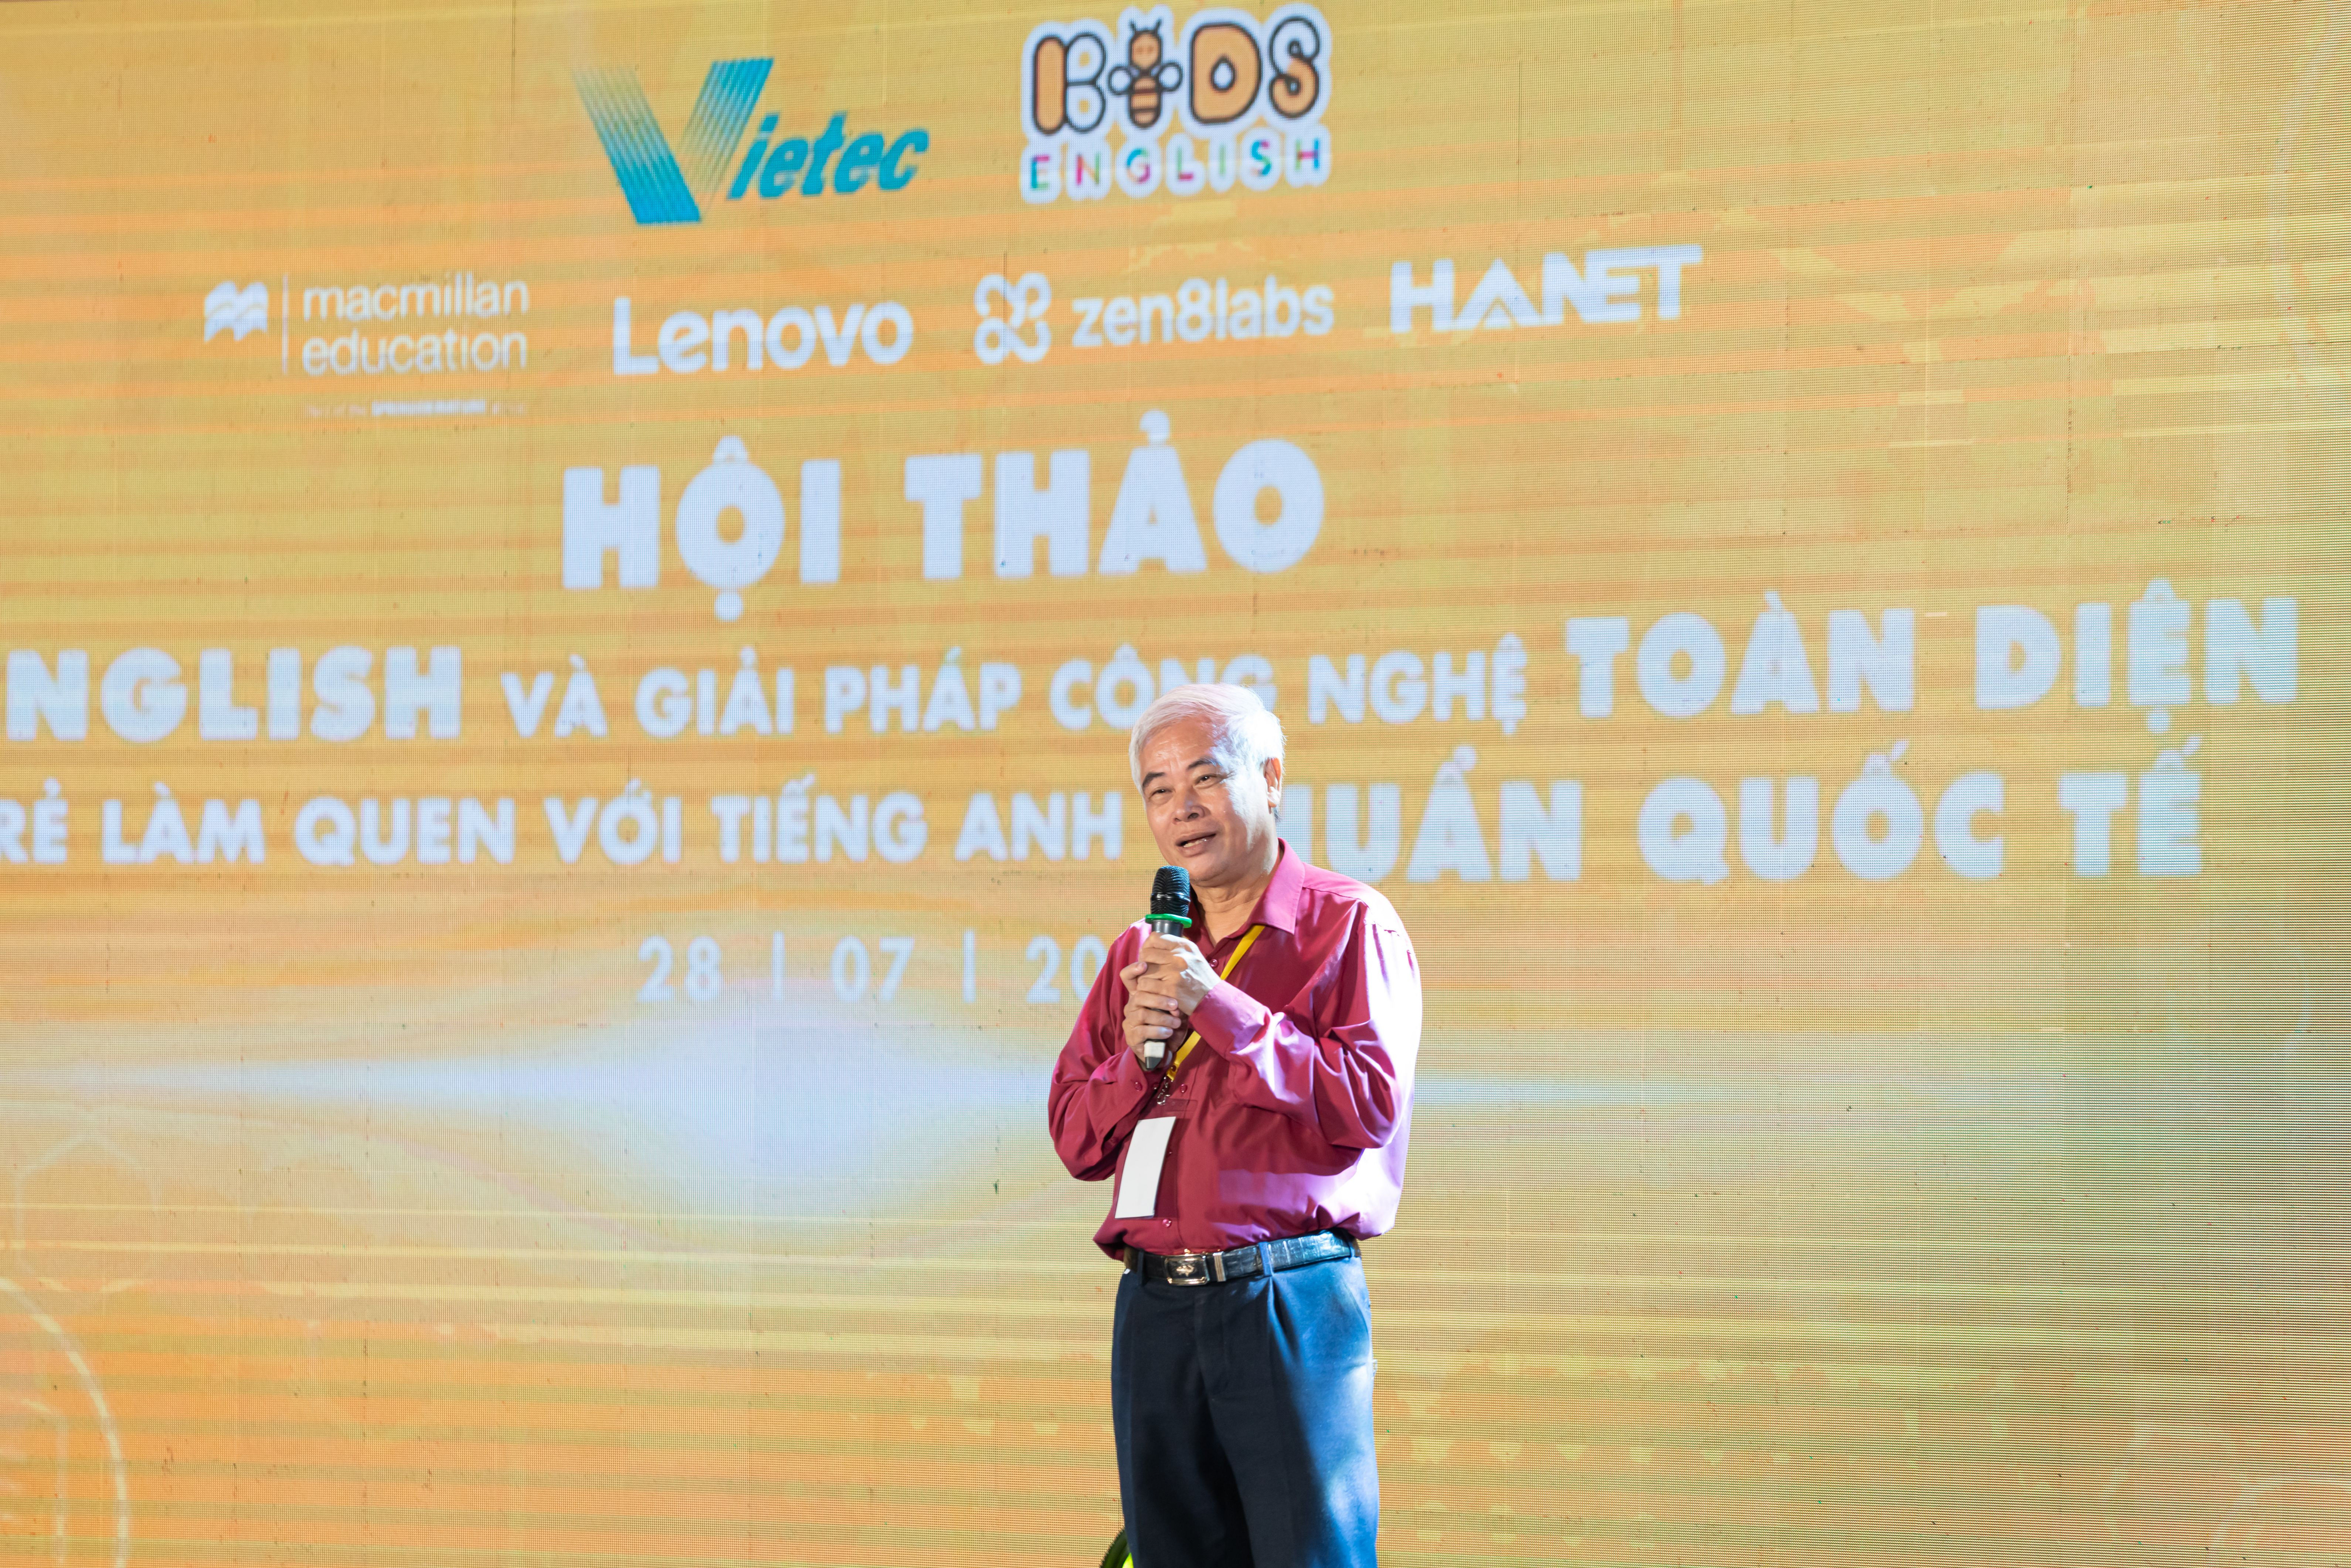 Tiến sĩ Quách Tuấn Ngọc chia sẻ về sự kết nối của công nghệ và phát triển giáo dục